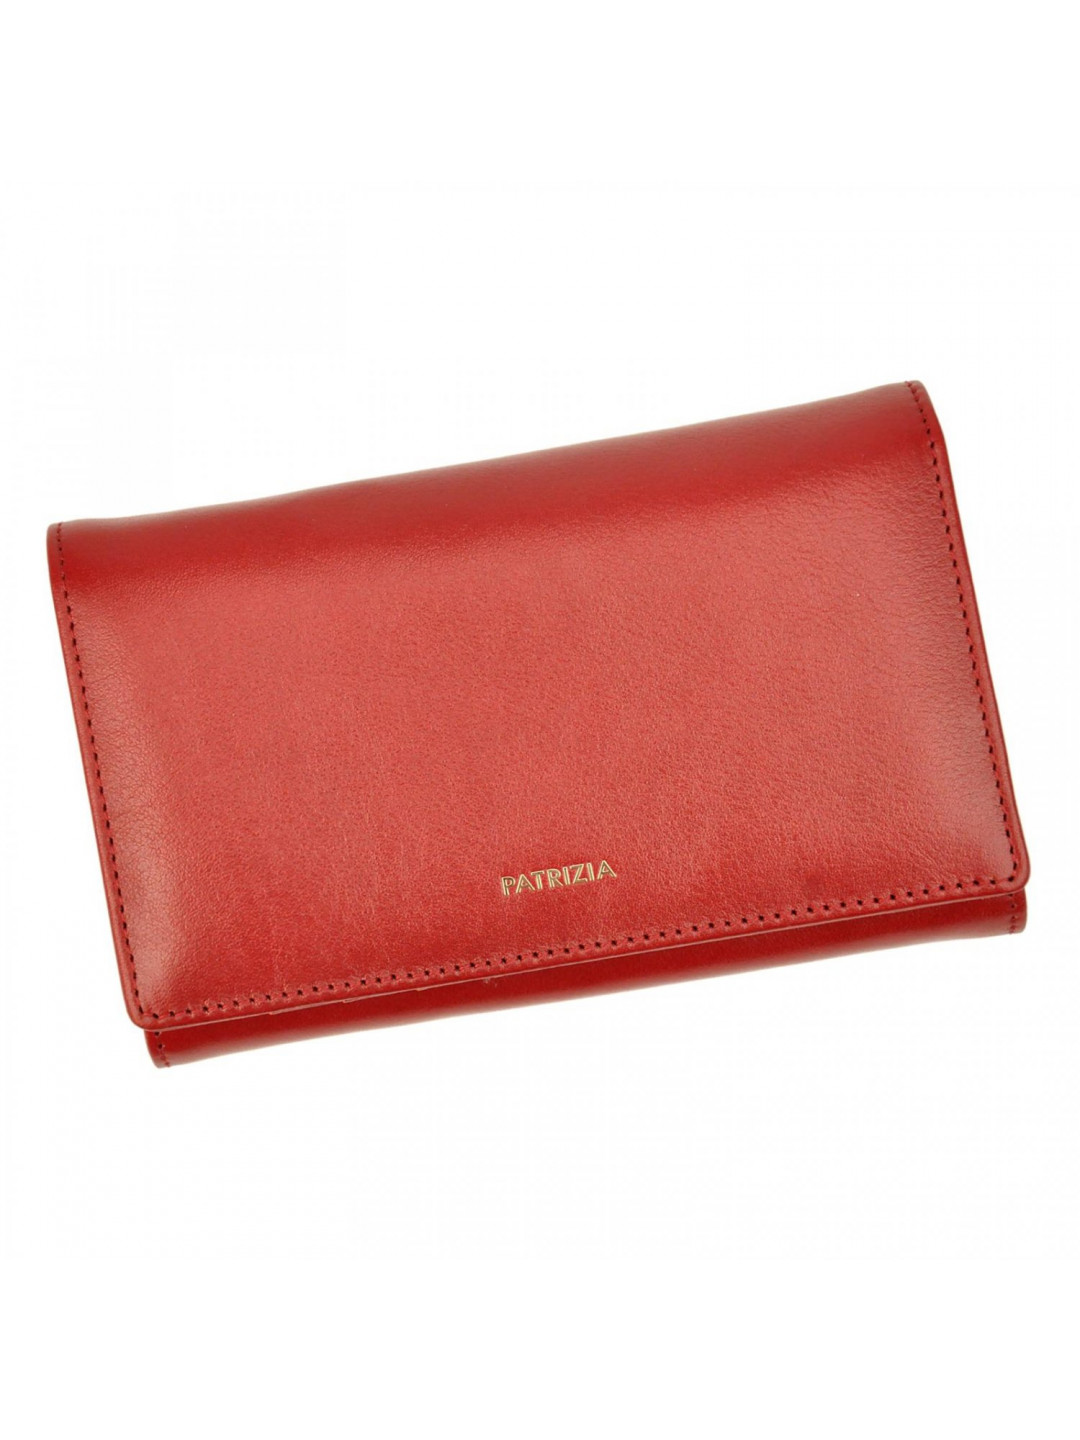 Dámská kožená peněženka červená – Patrizia Emillena